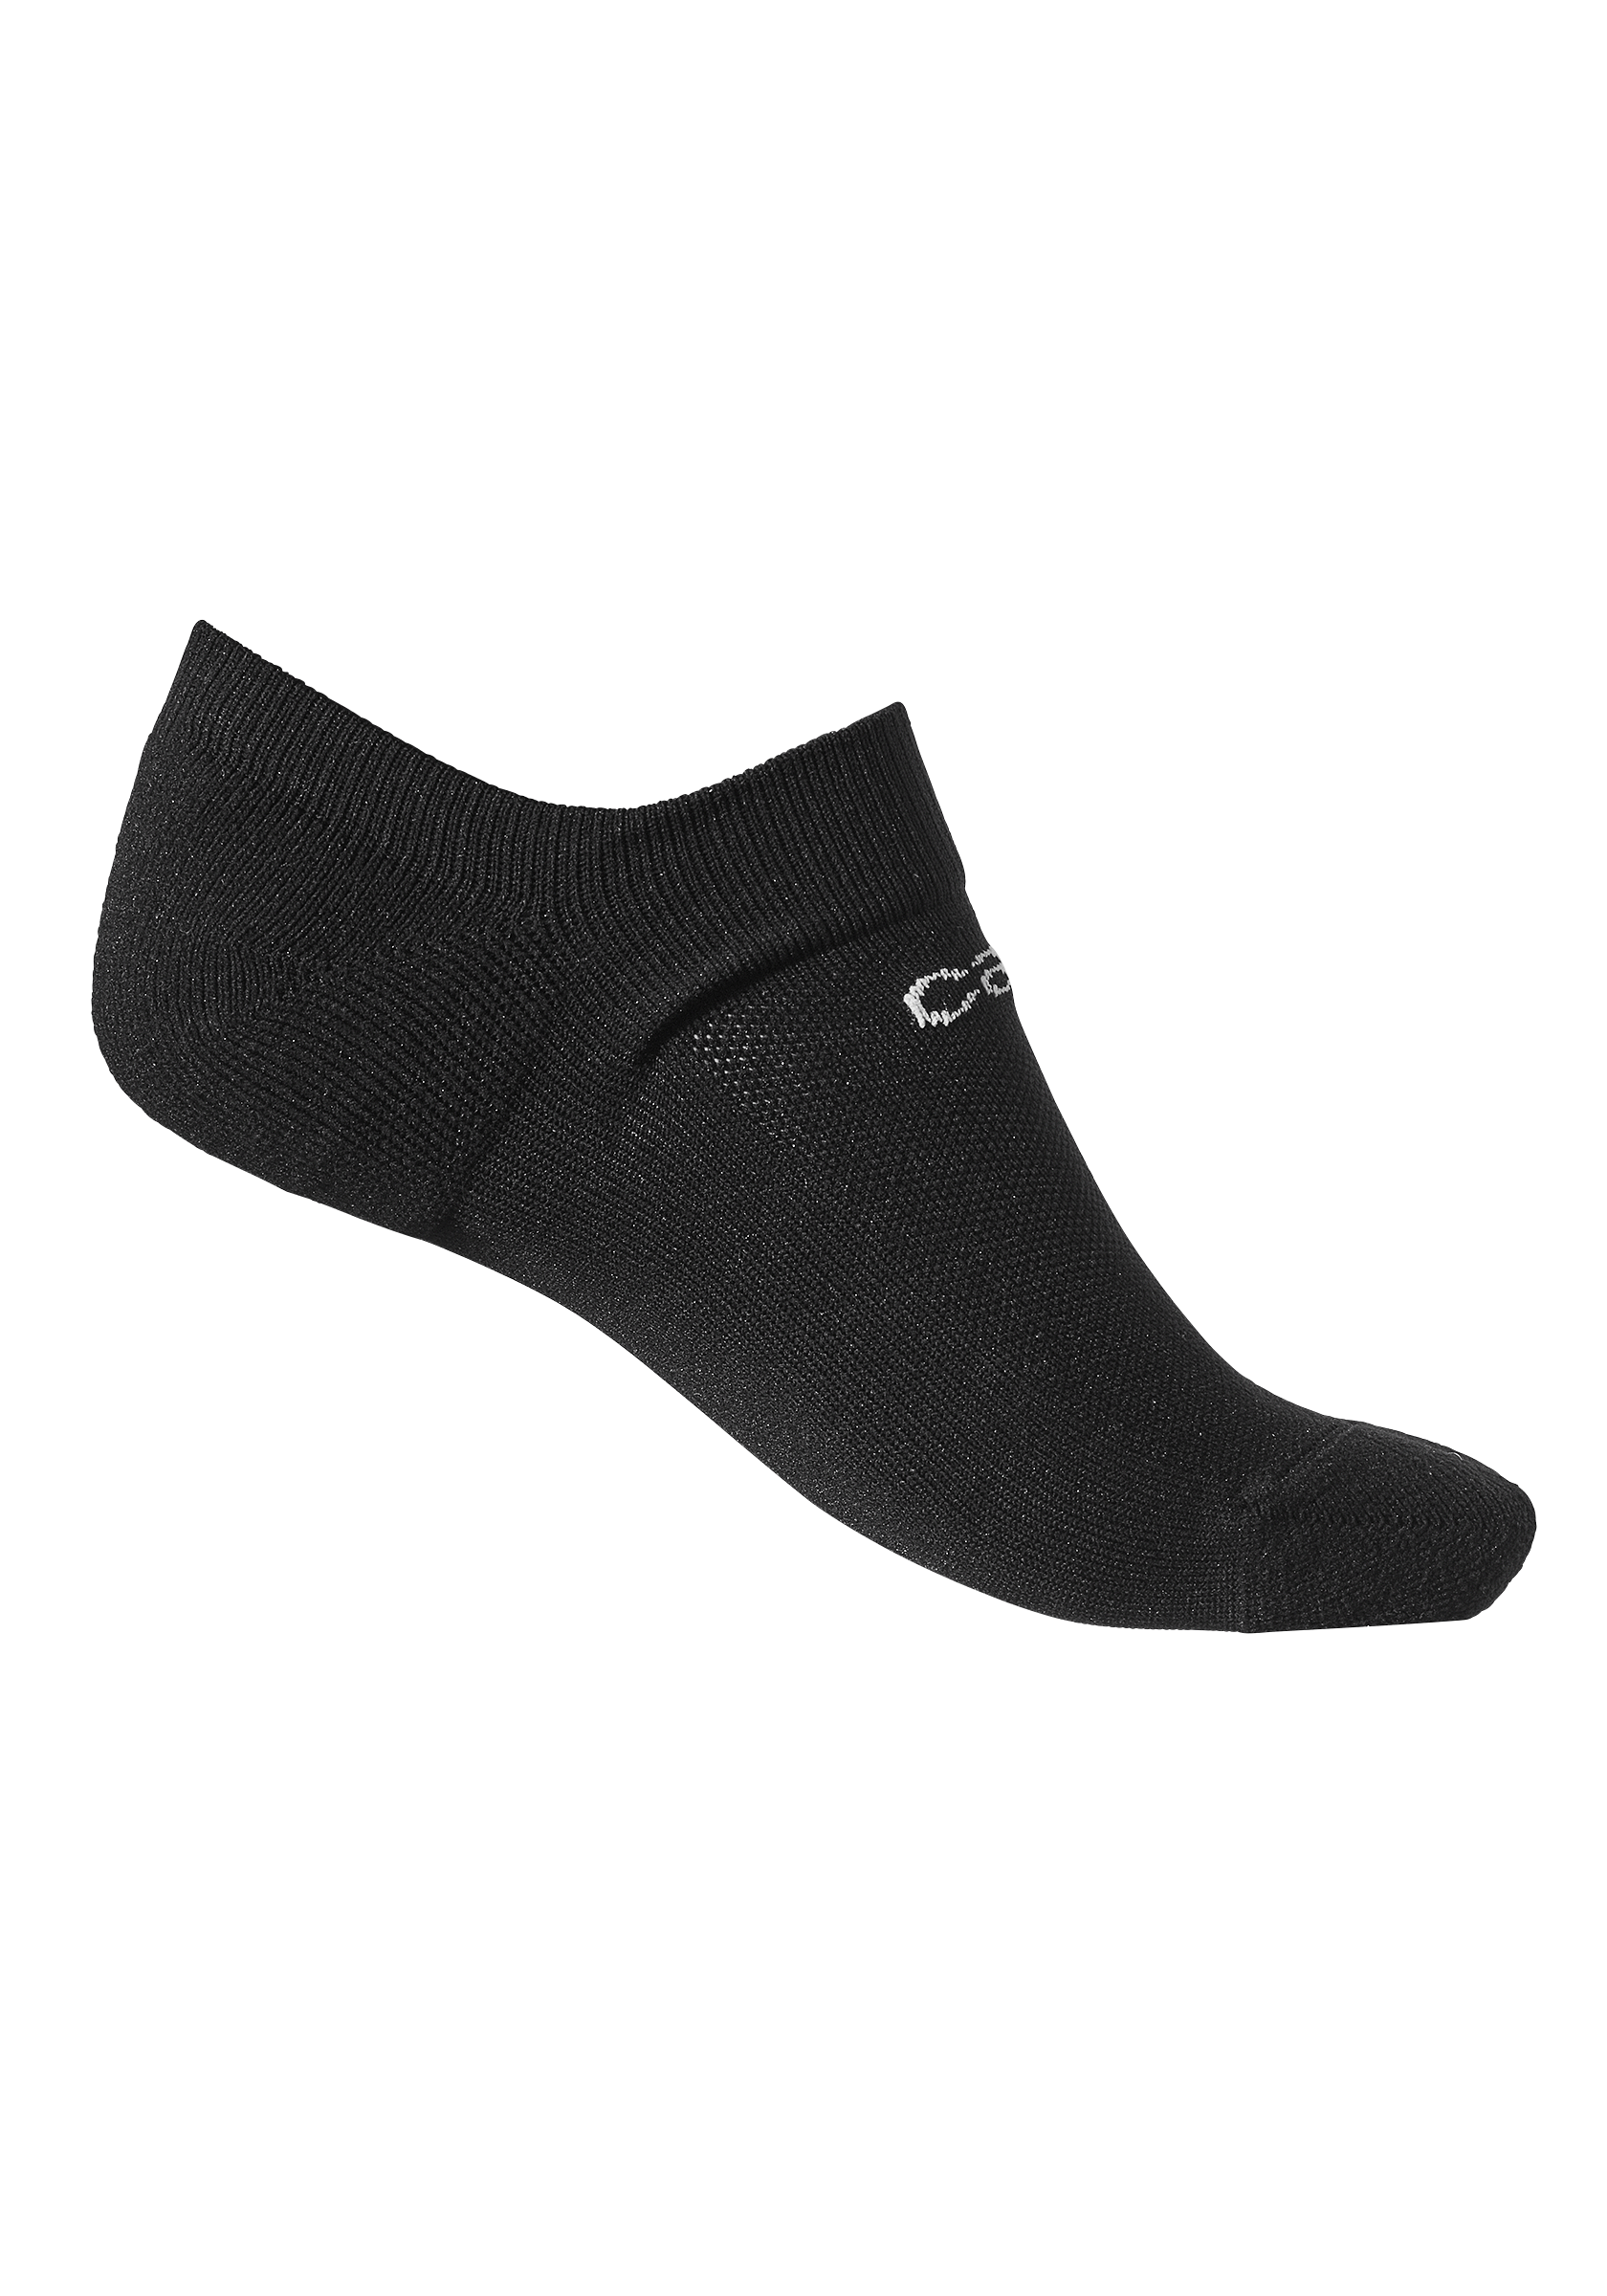 Traning sock - Black